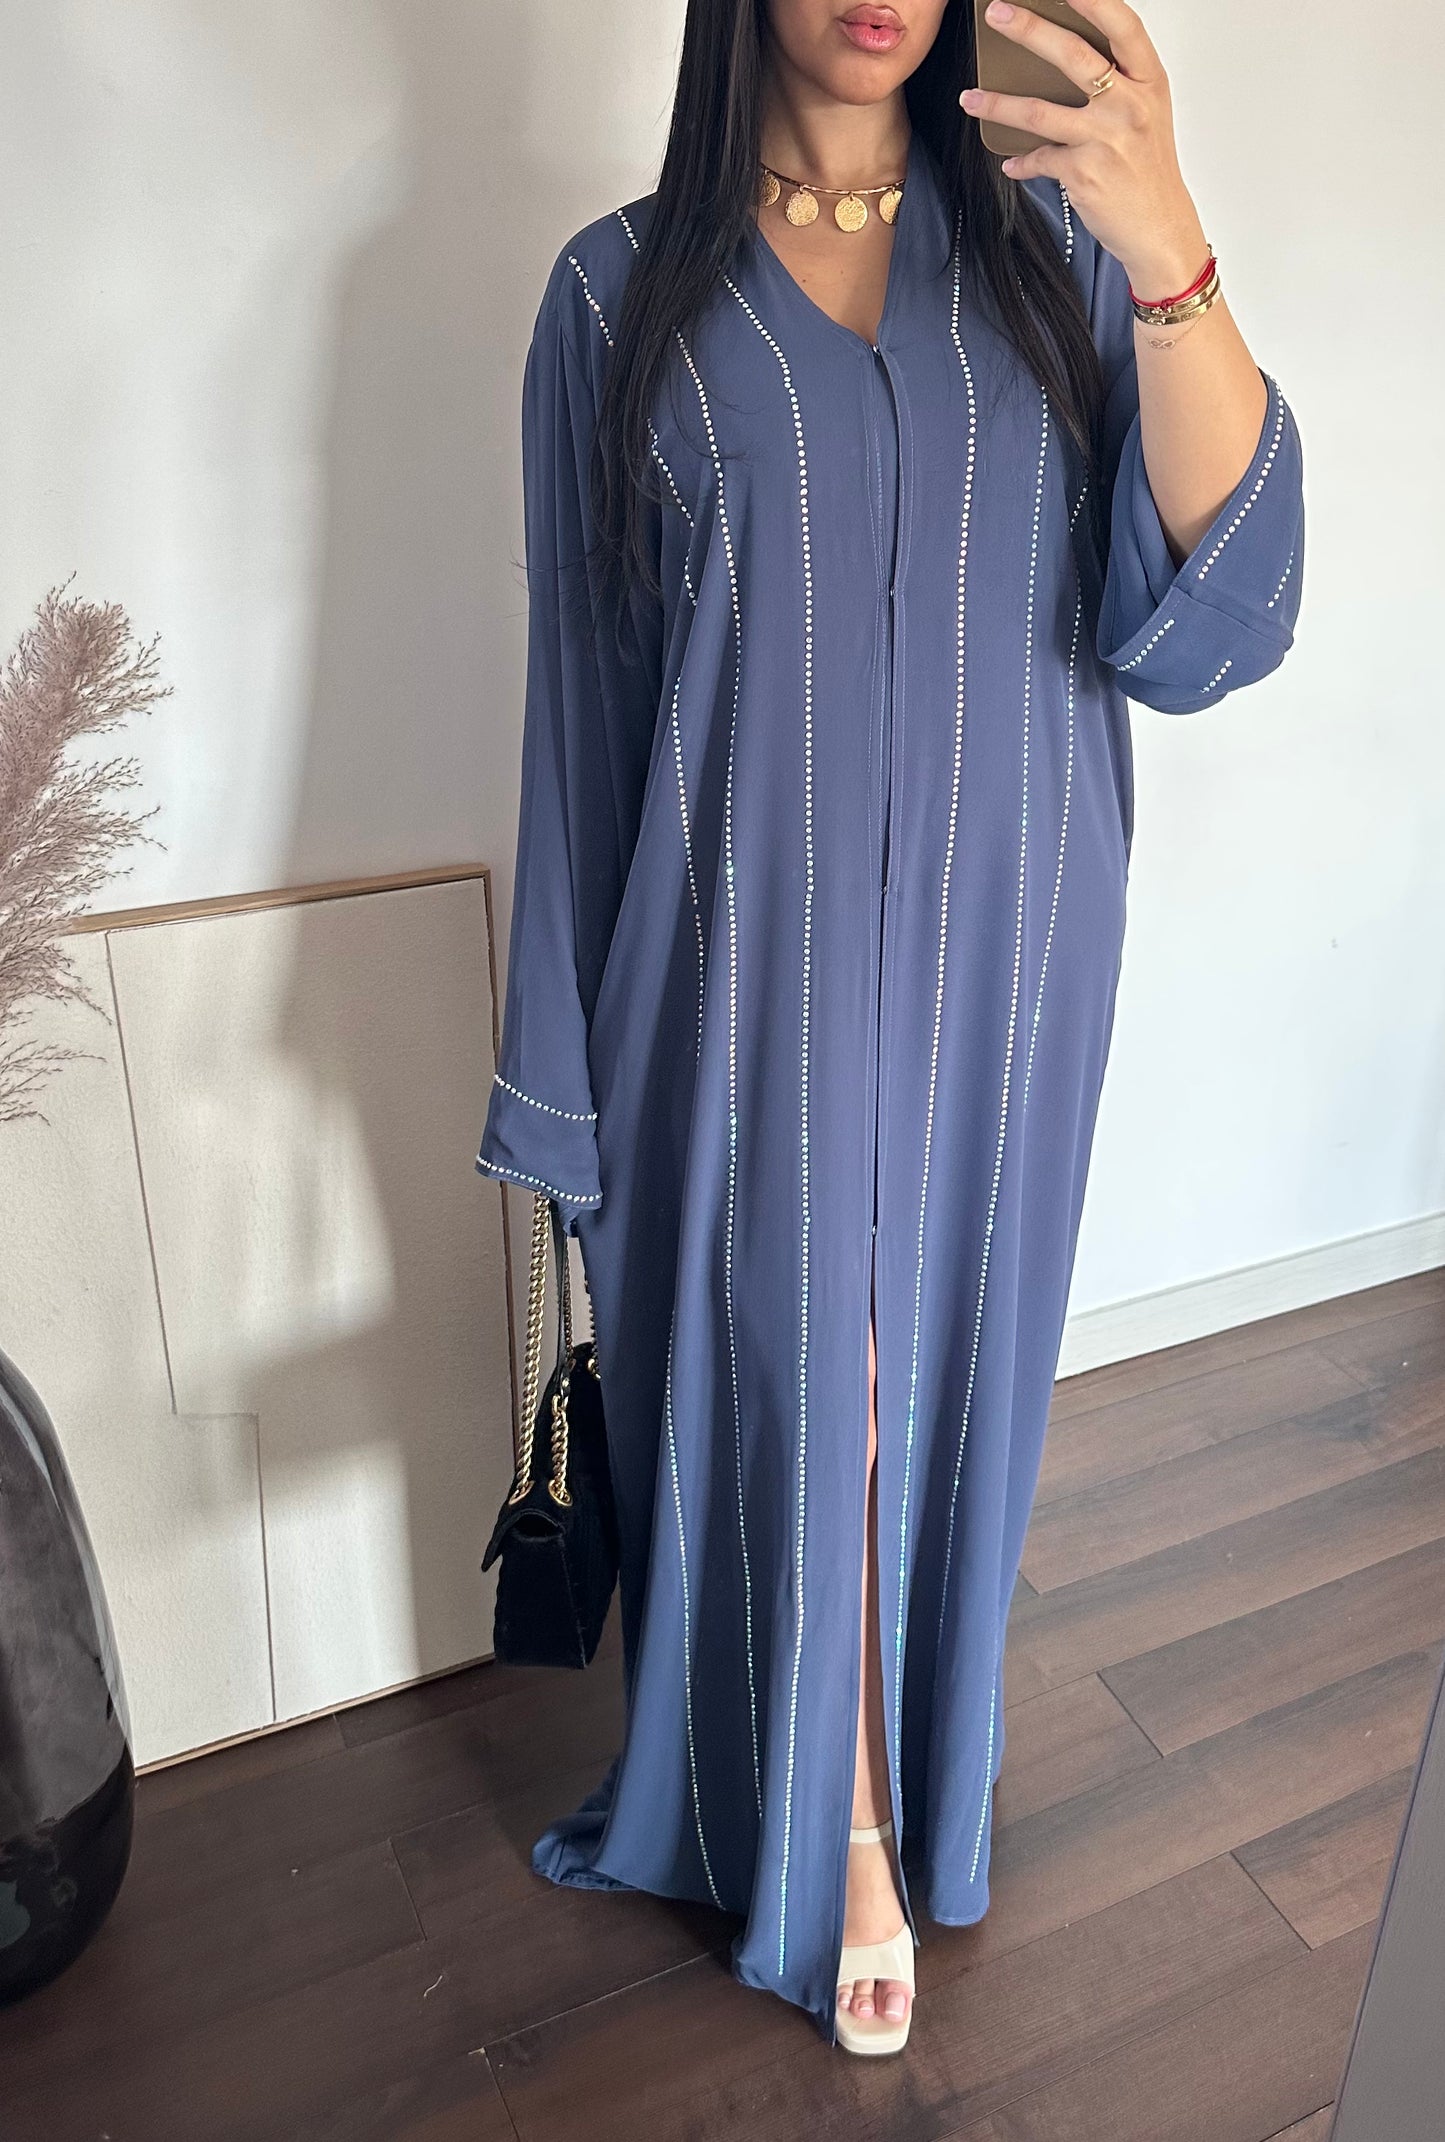 Abaya Sherazade - Nackt - Hergestellt in den Vereinigten Arabischen Emiraten